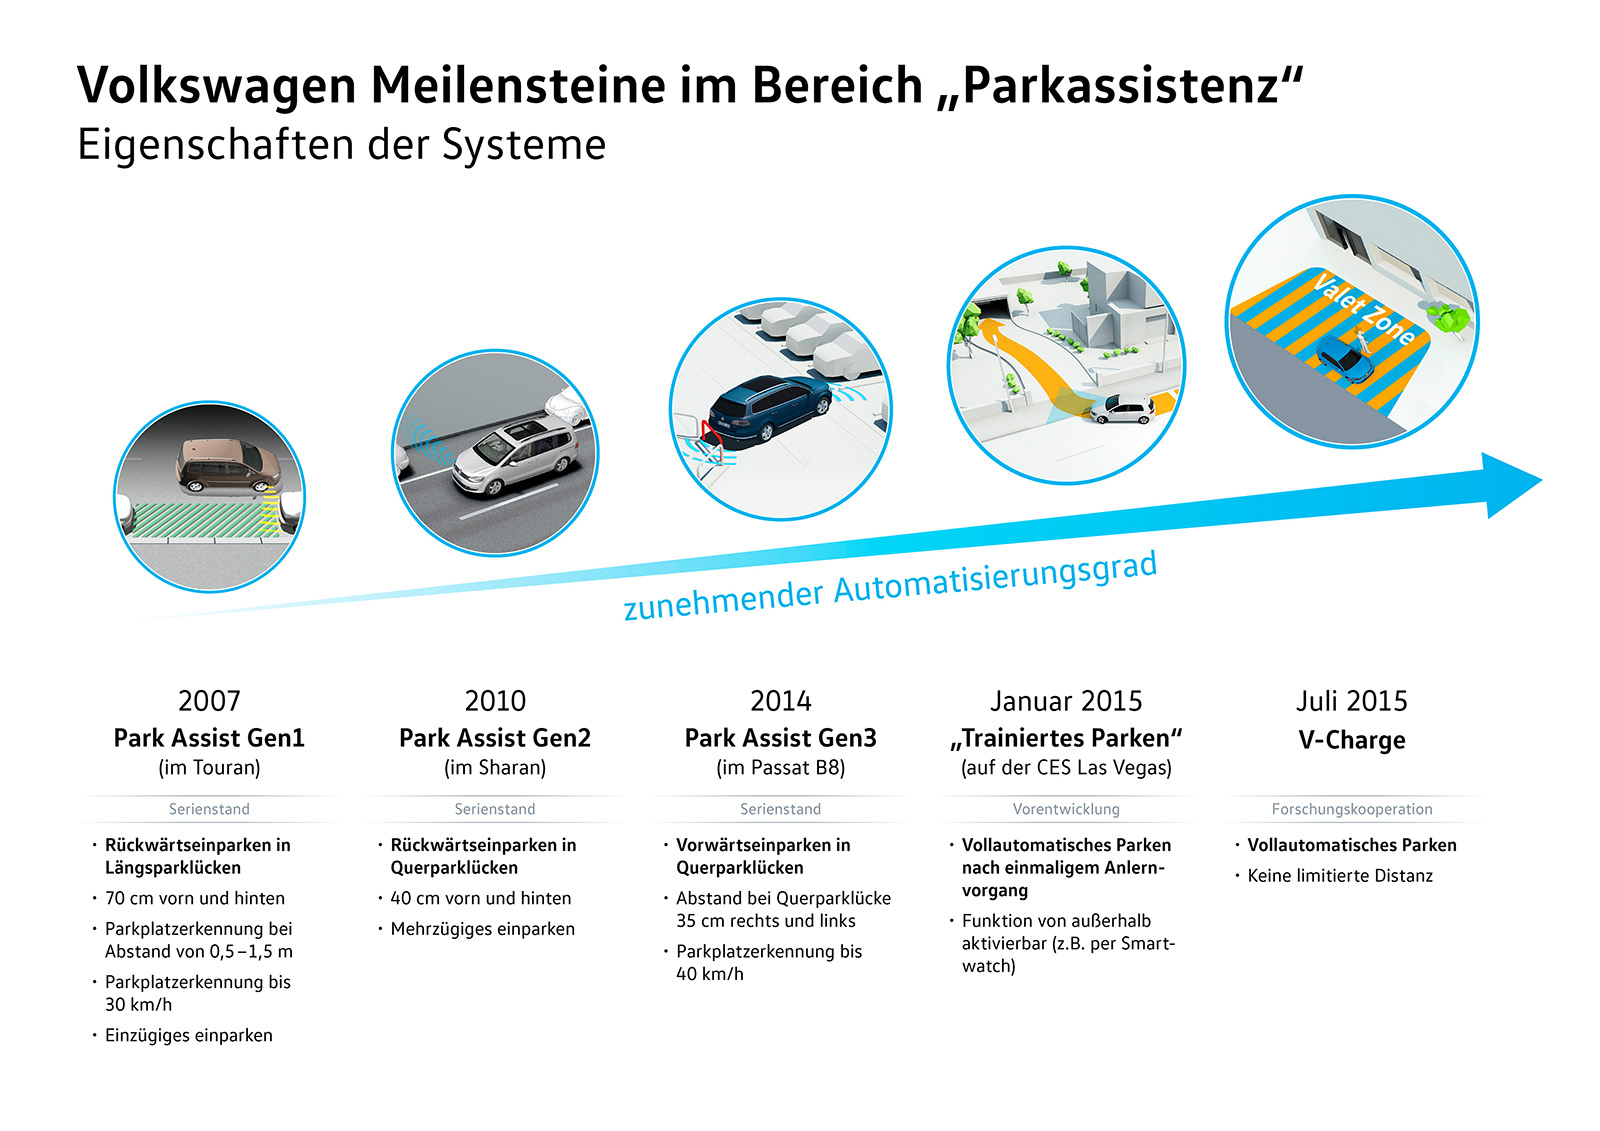 Entwicklung von autonomen Laden von Volkswagen